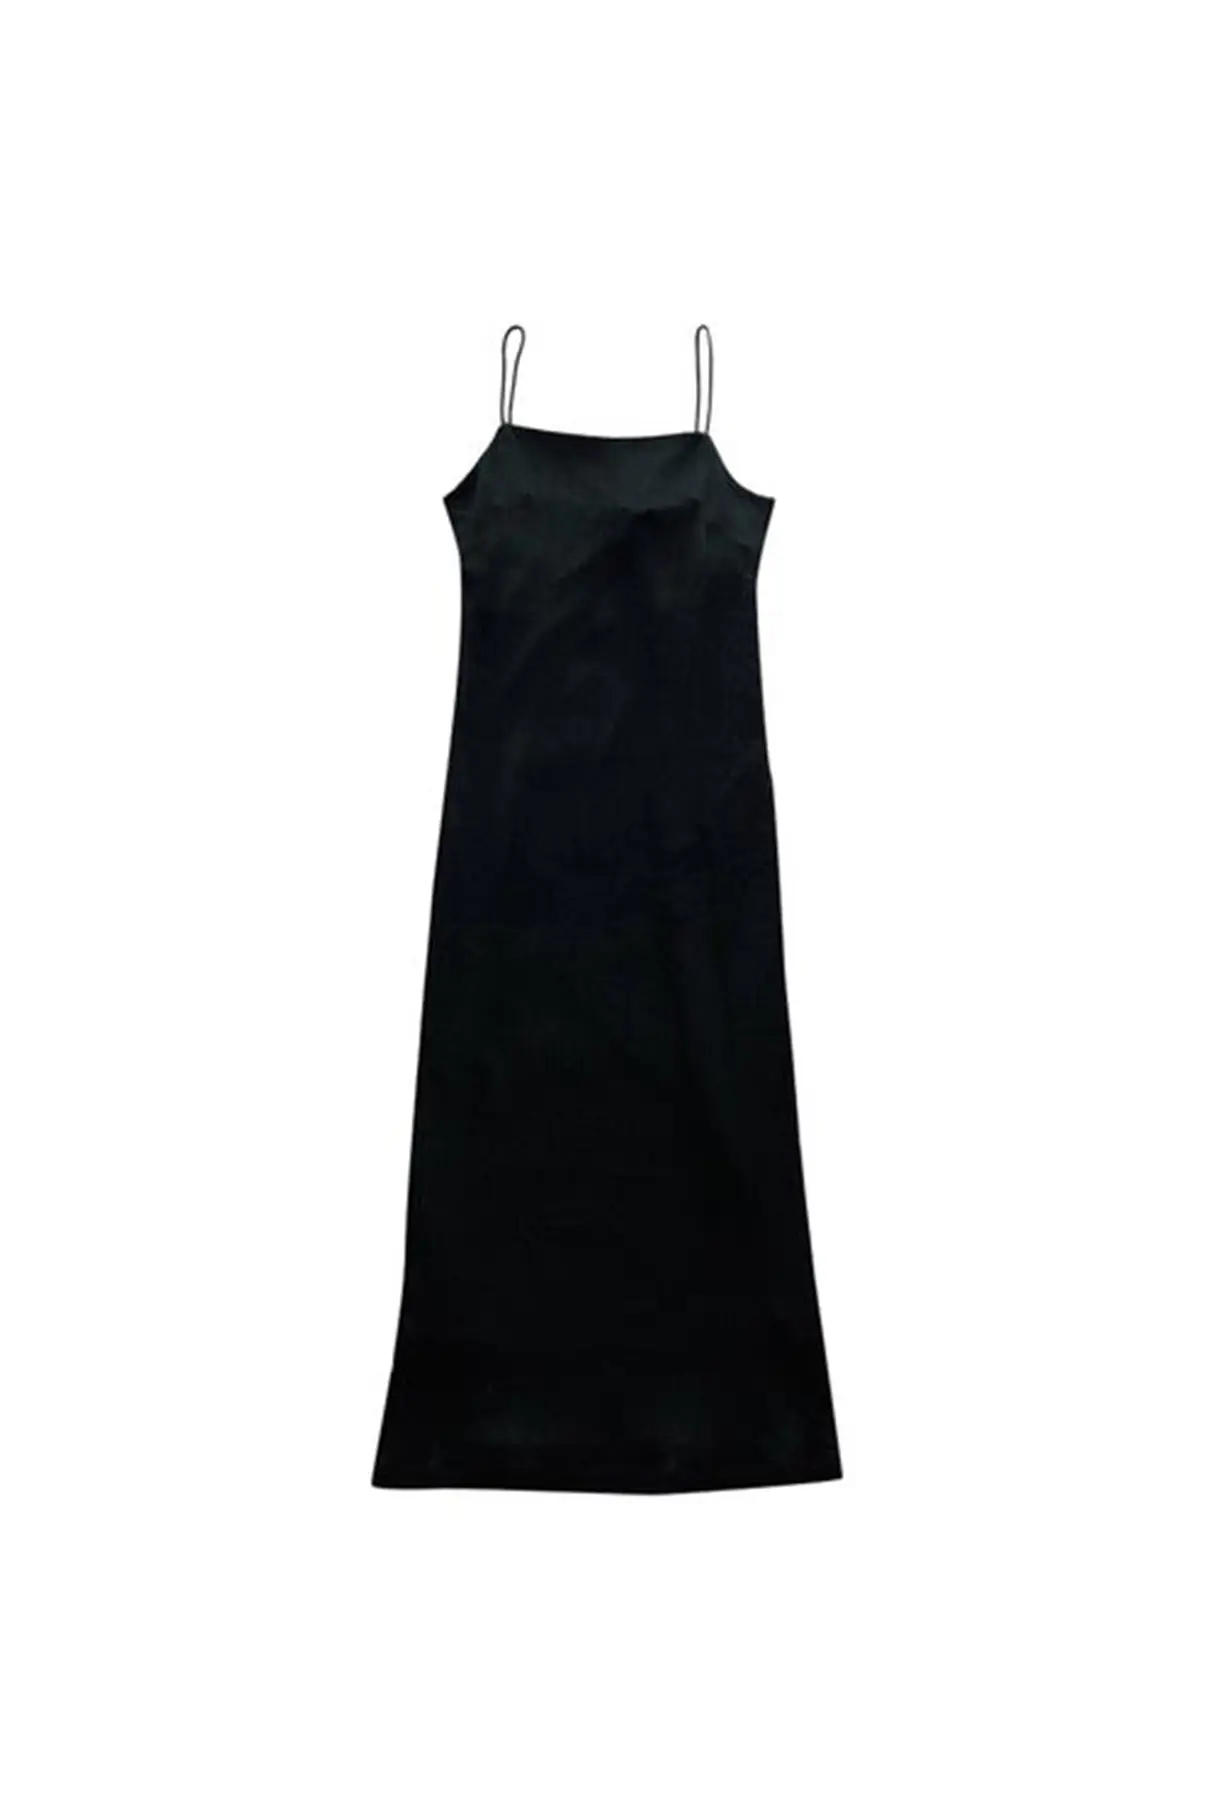 black-silk-zimmermann-dress.jpg